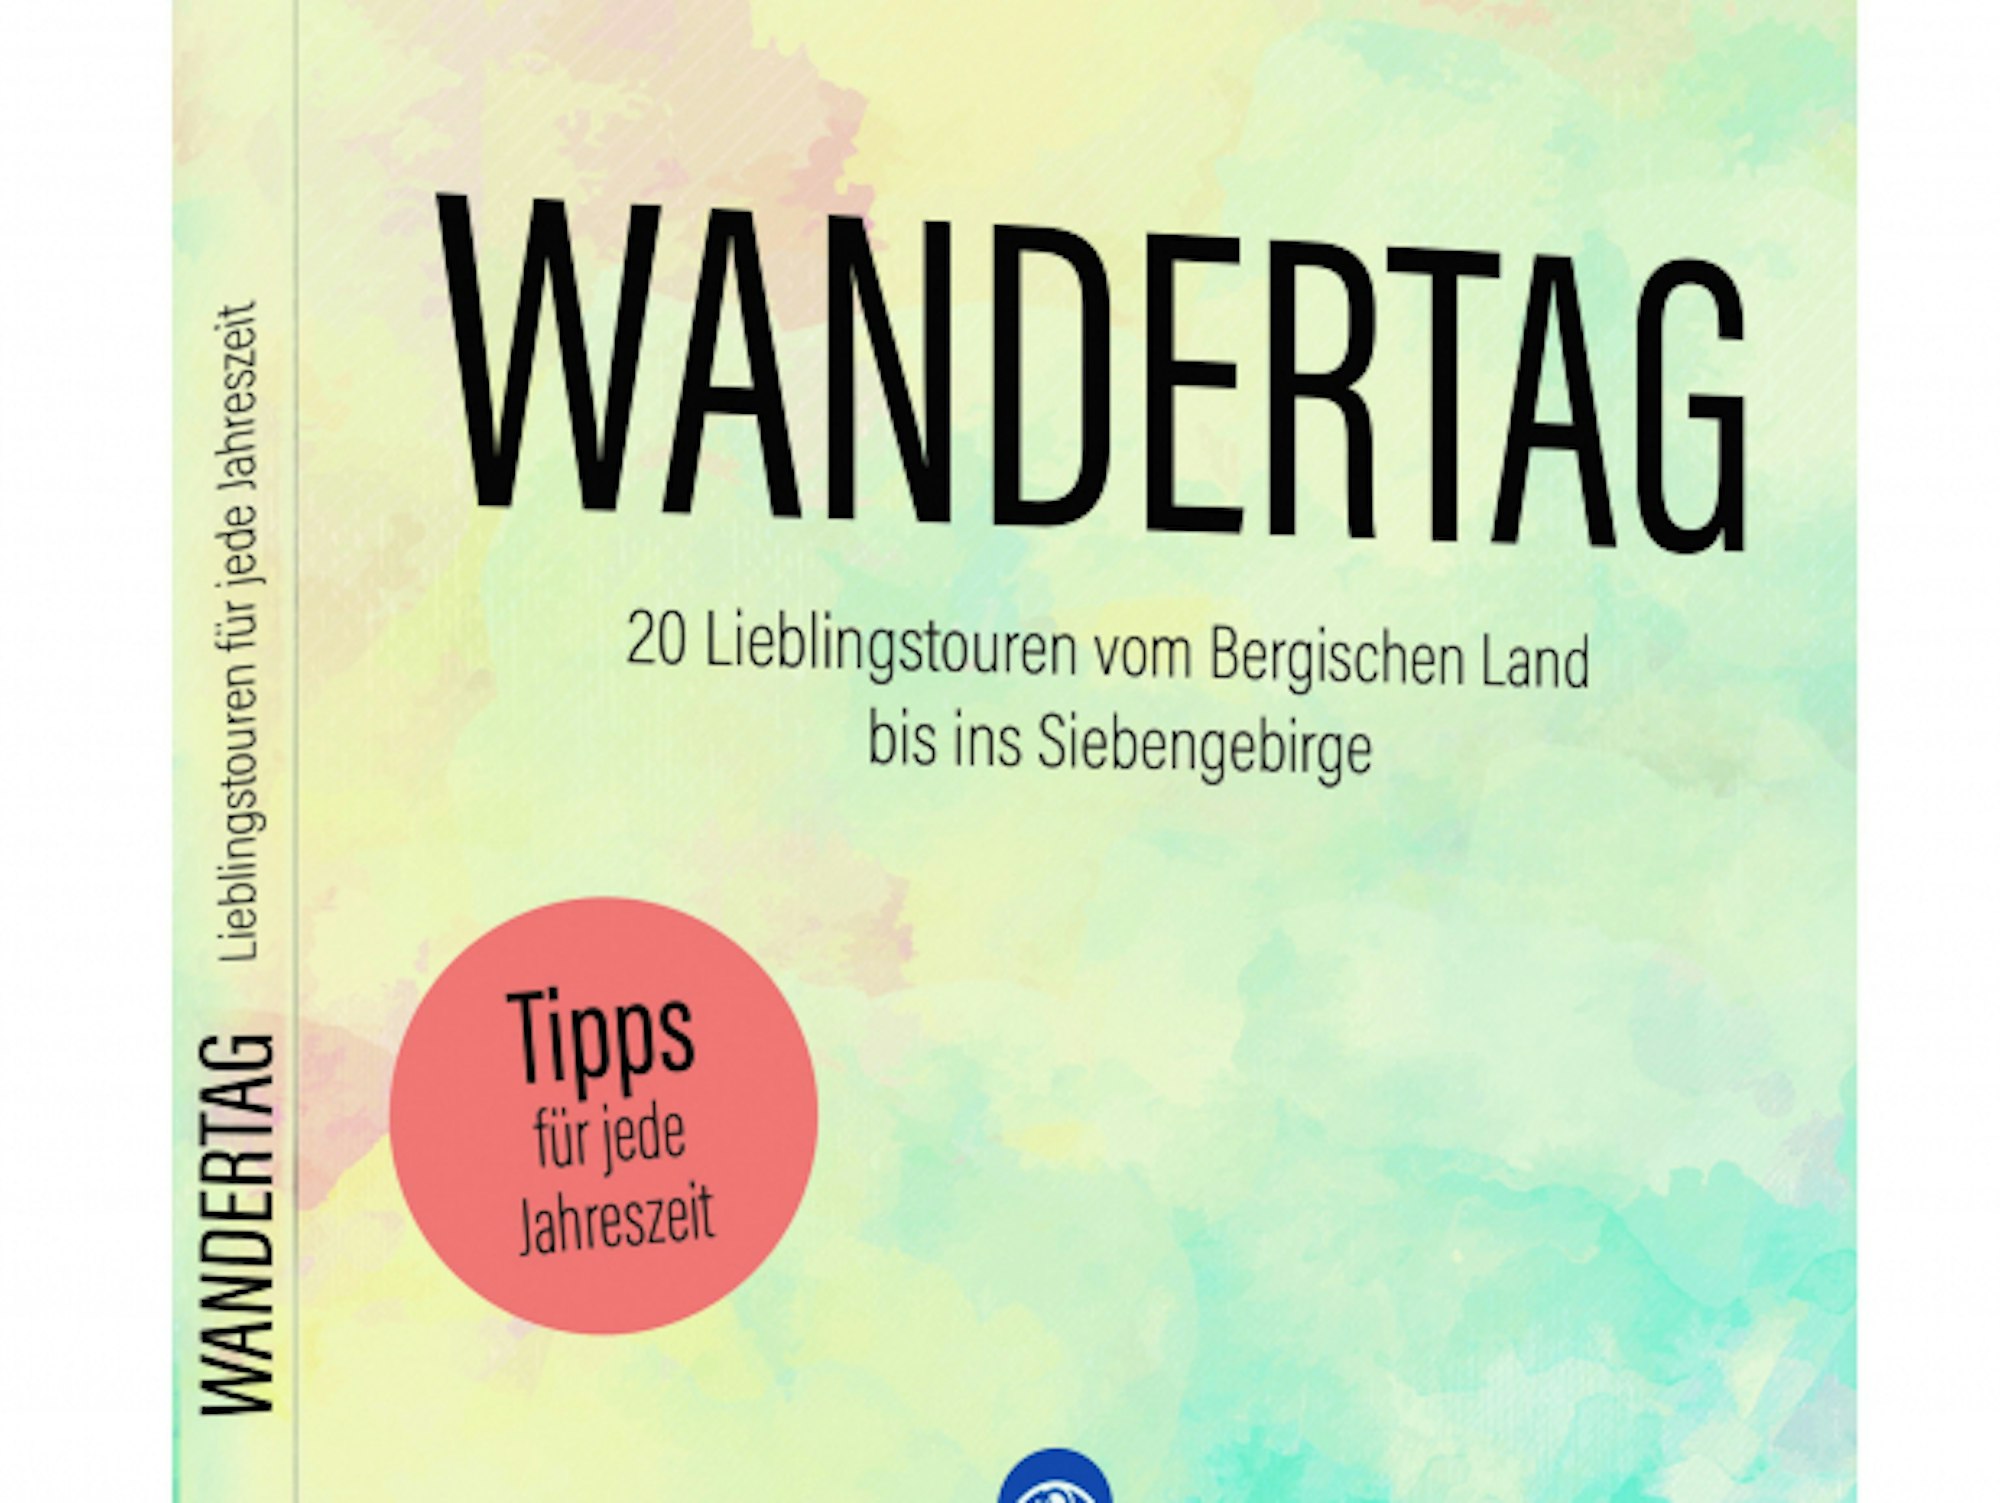 Buch_Wandertag_KSTA_KR_Guido_Wagner_FINAL_Packshot